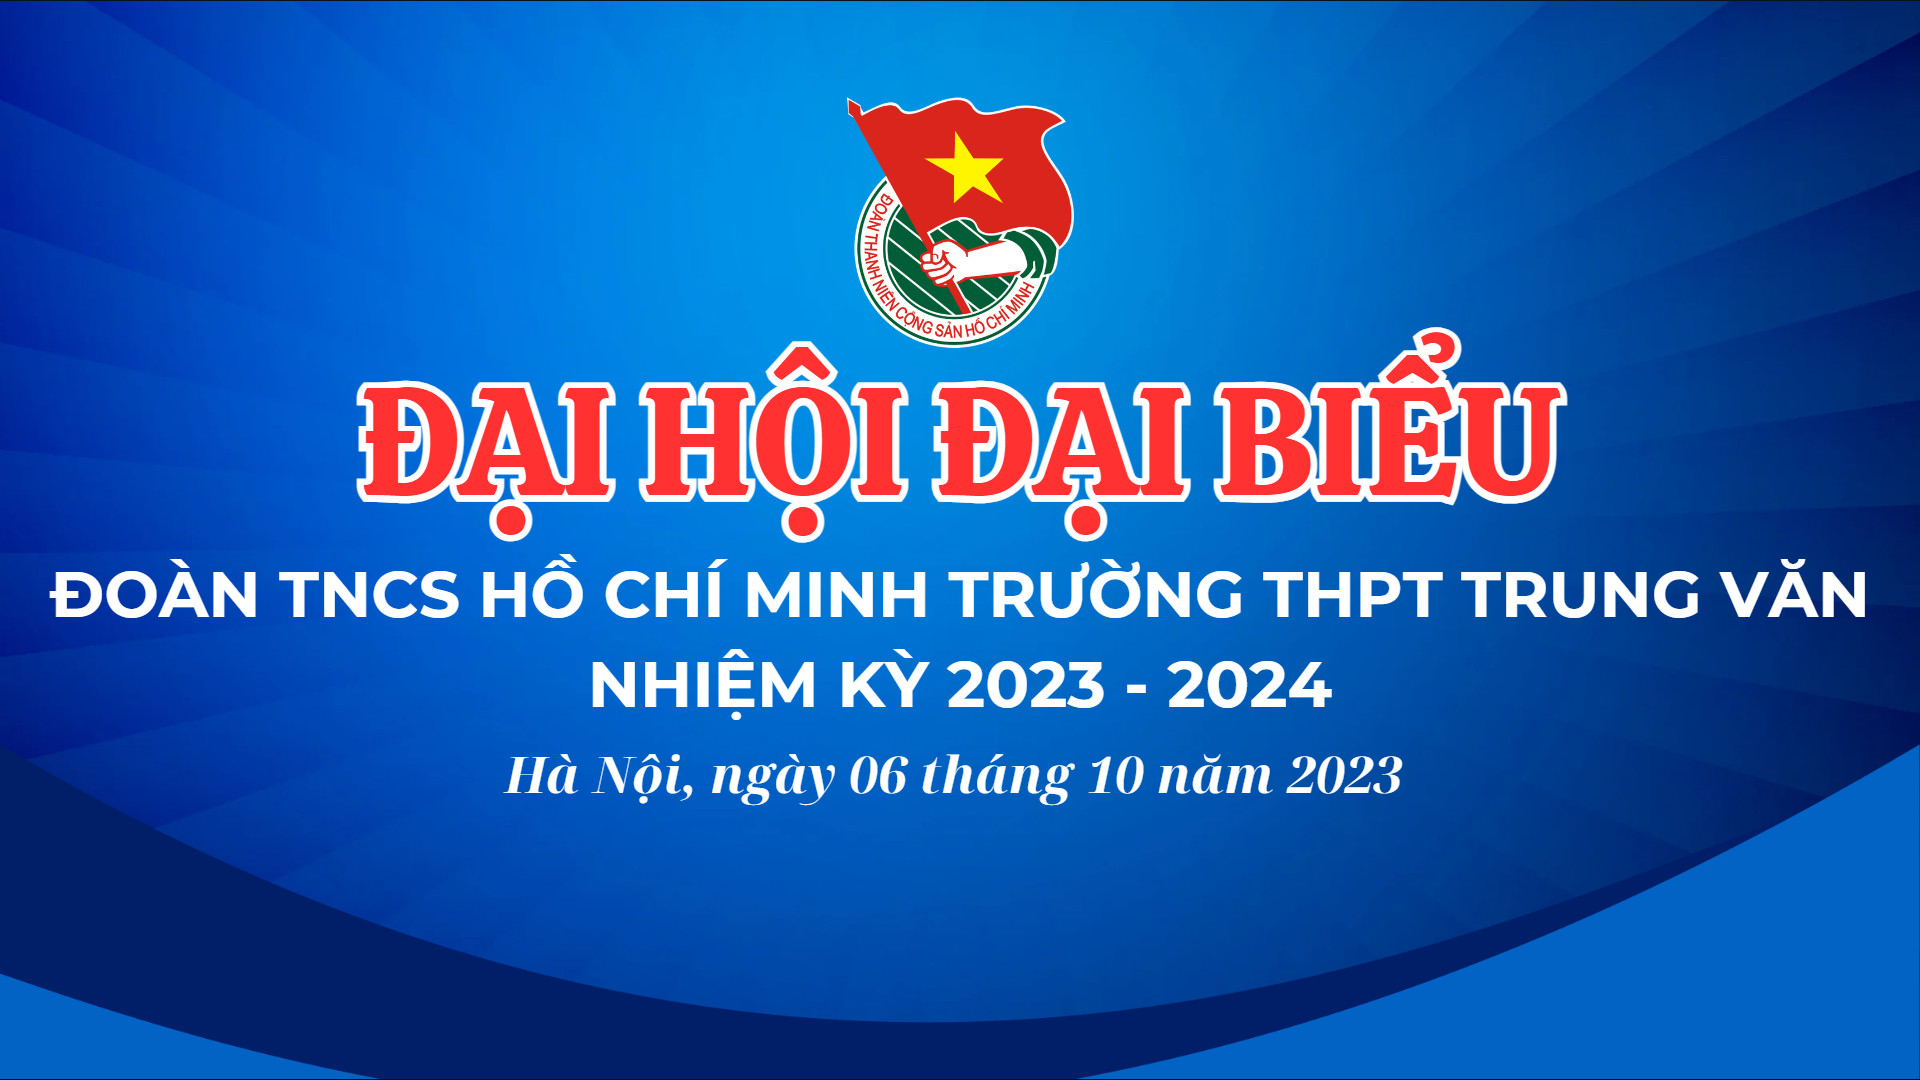 BAN CHẤP HÀNH ĐOÀN TRƯỜNG THPT TRUNG VĂN NHIỆM KÌ 2023 - 2024